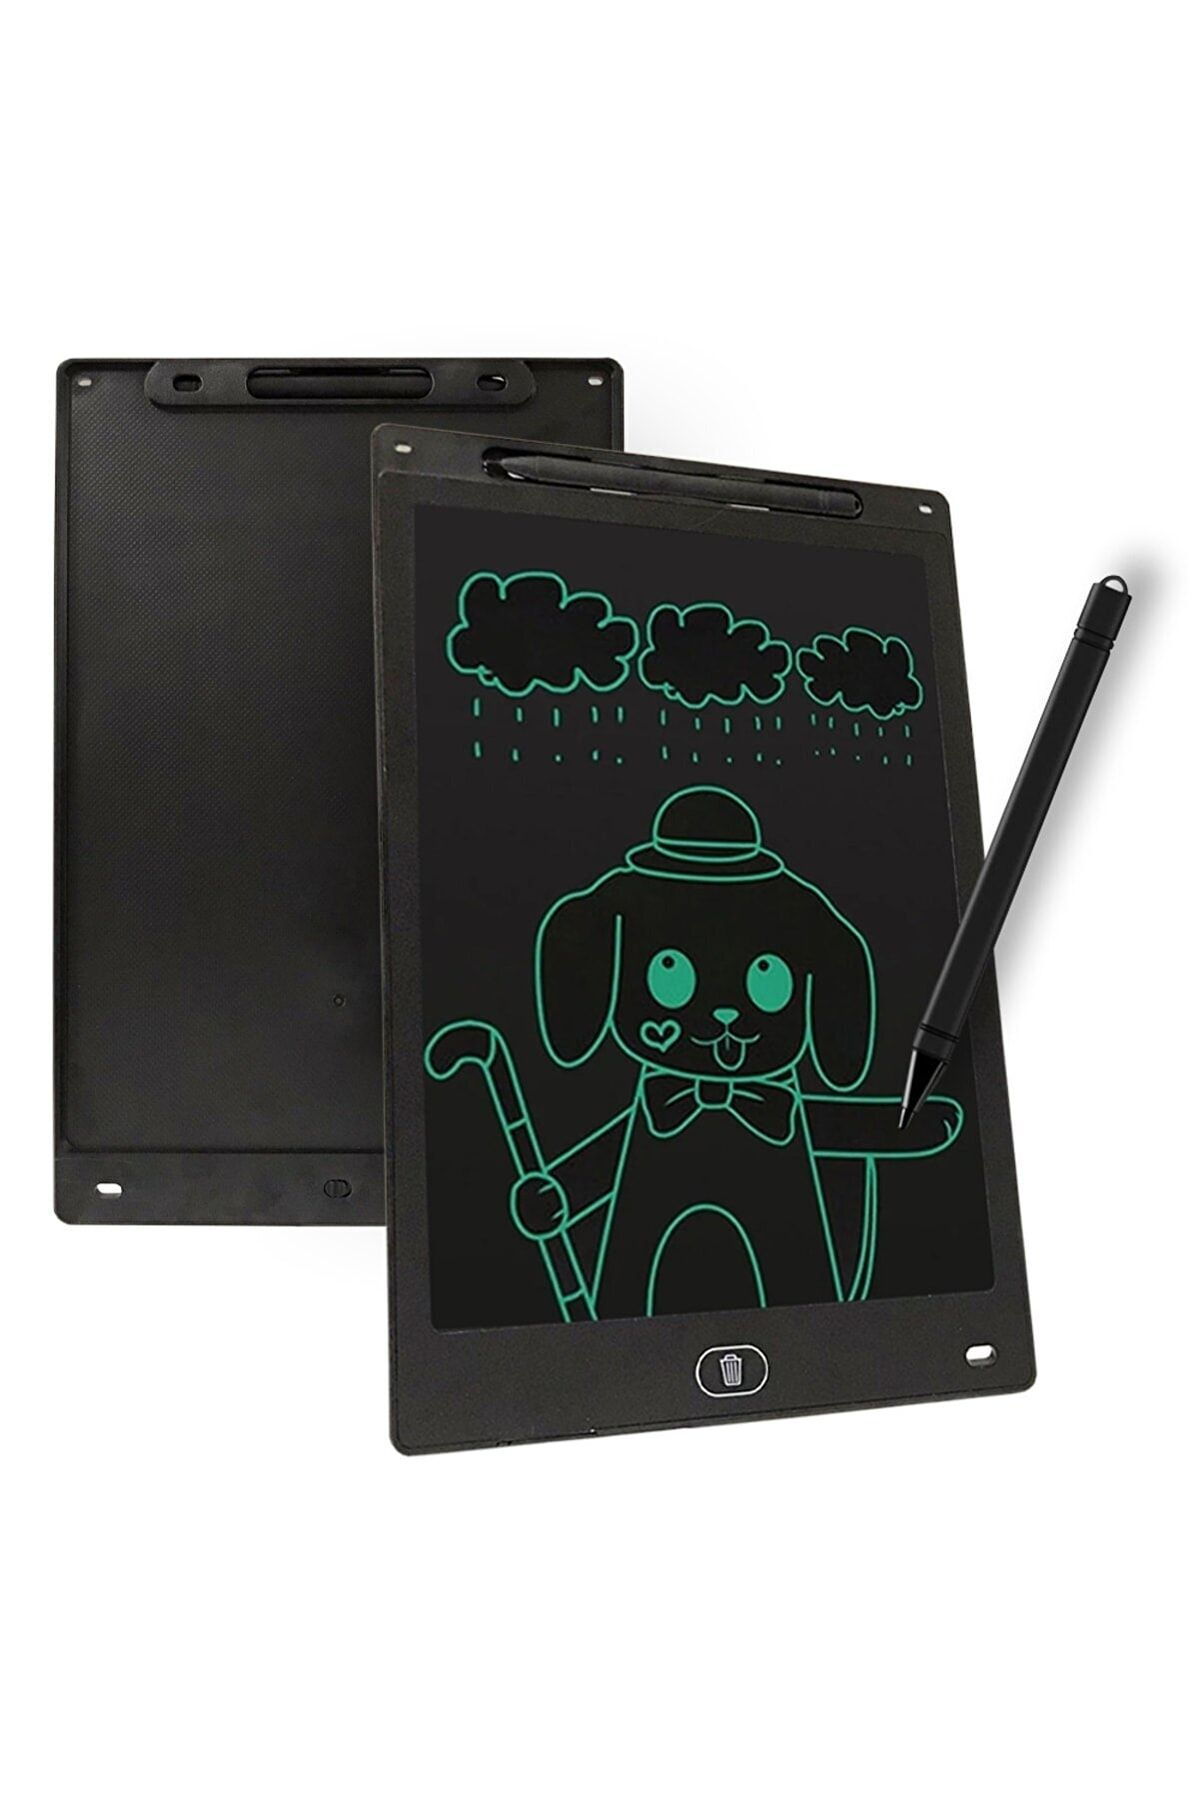 BST BRANDSHOPPİNGTR Writing Tablet Lcd 10 Inç Dijital Kalemli Çizim Yazı Tahtası Grafik Not Yazma Eğitim Tableti